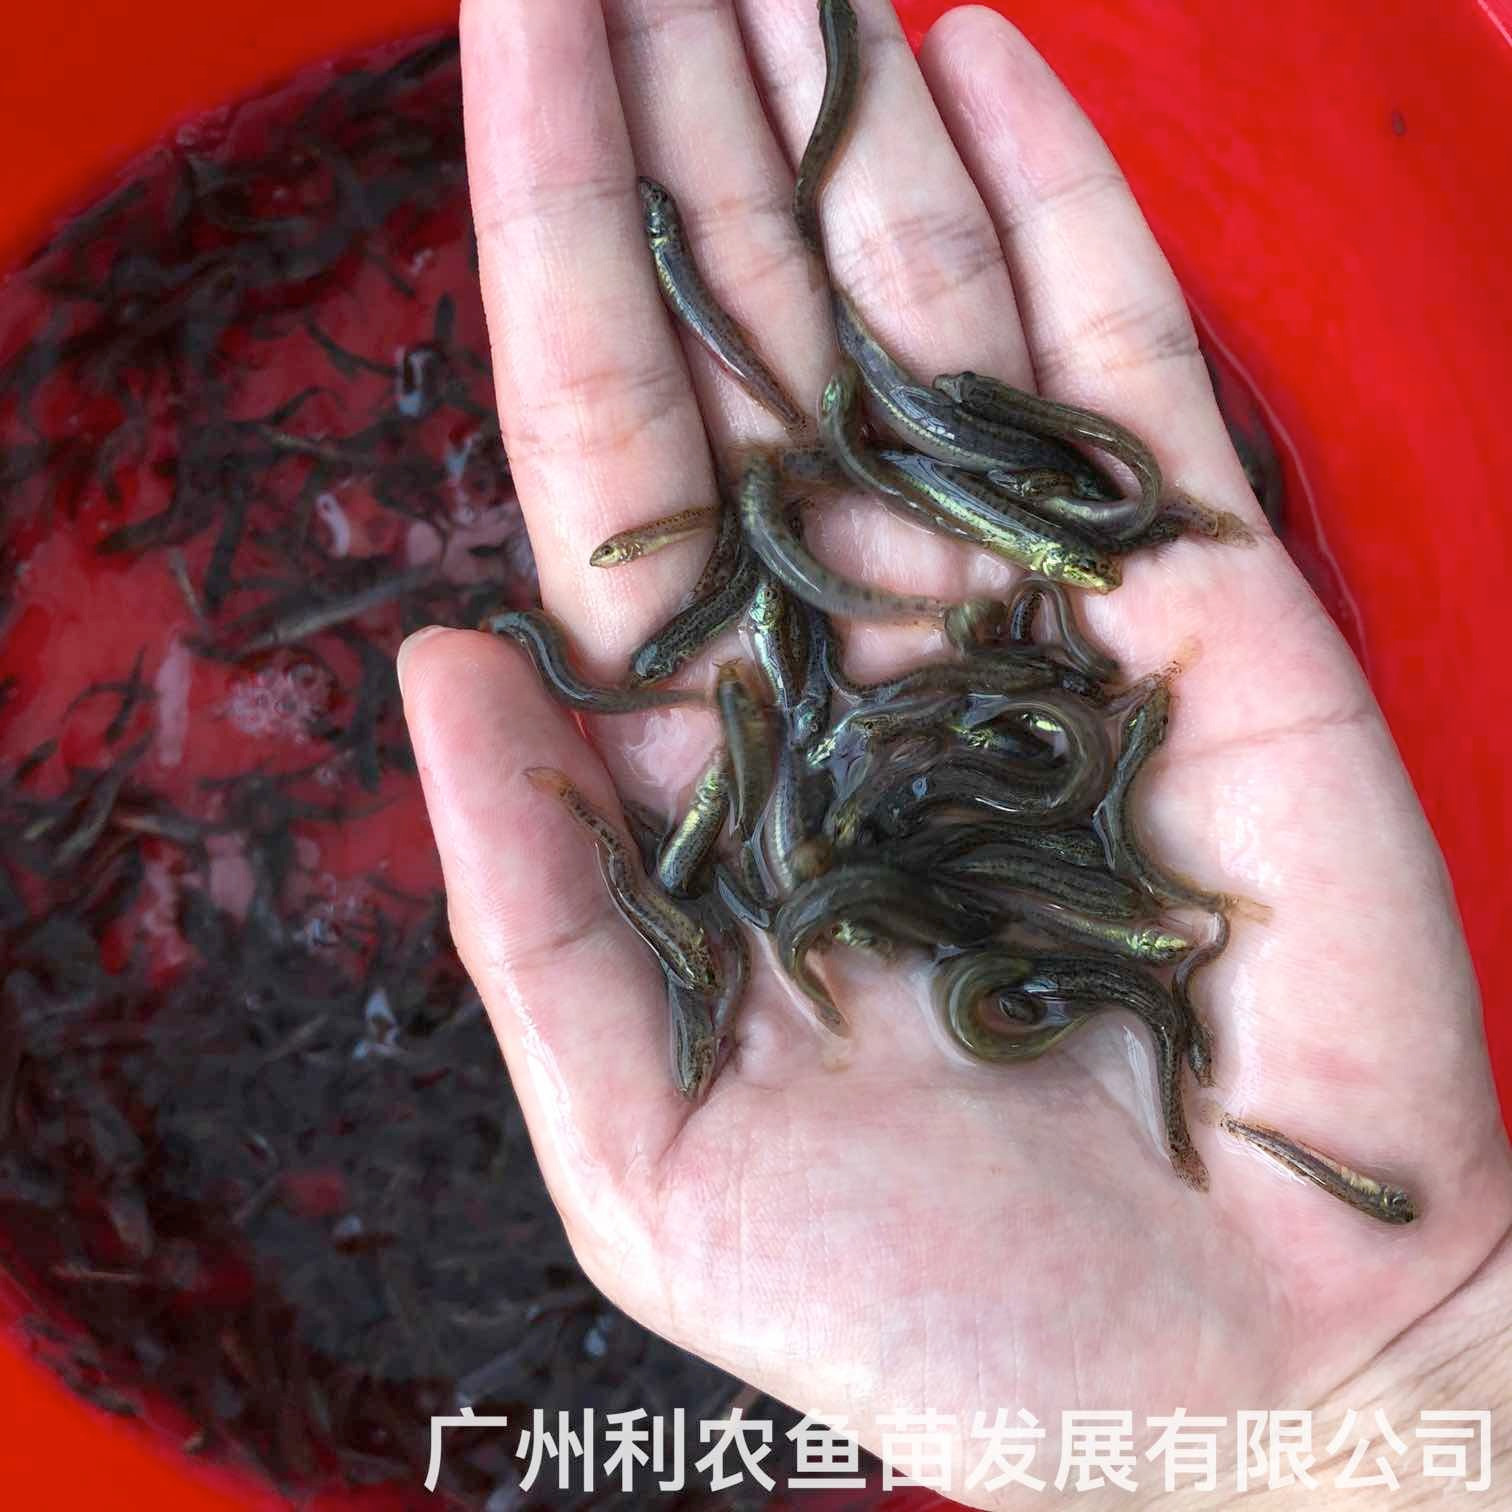 广东茂名台湾泥鳅苗出售出售价格广东阳江泥鳅鱼苗批发养殖基地